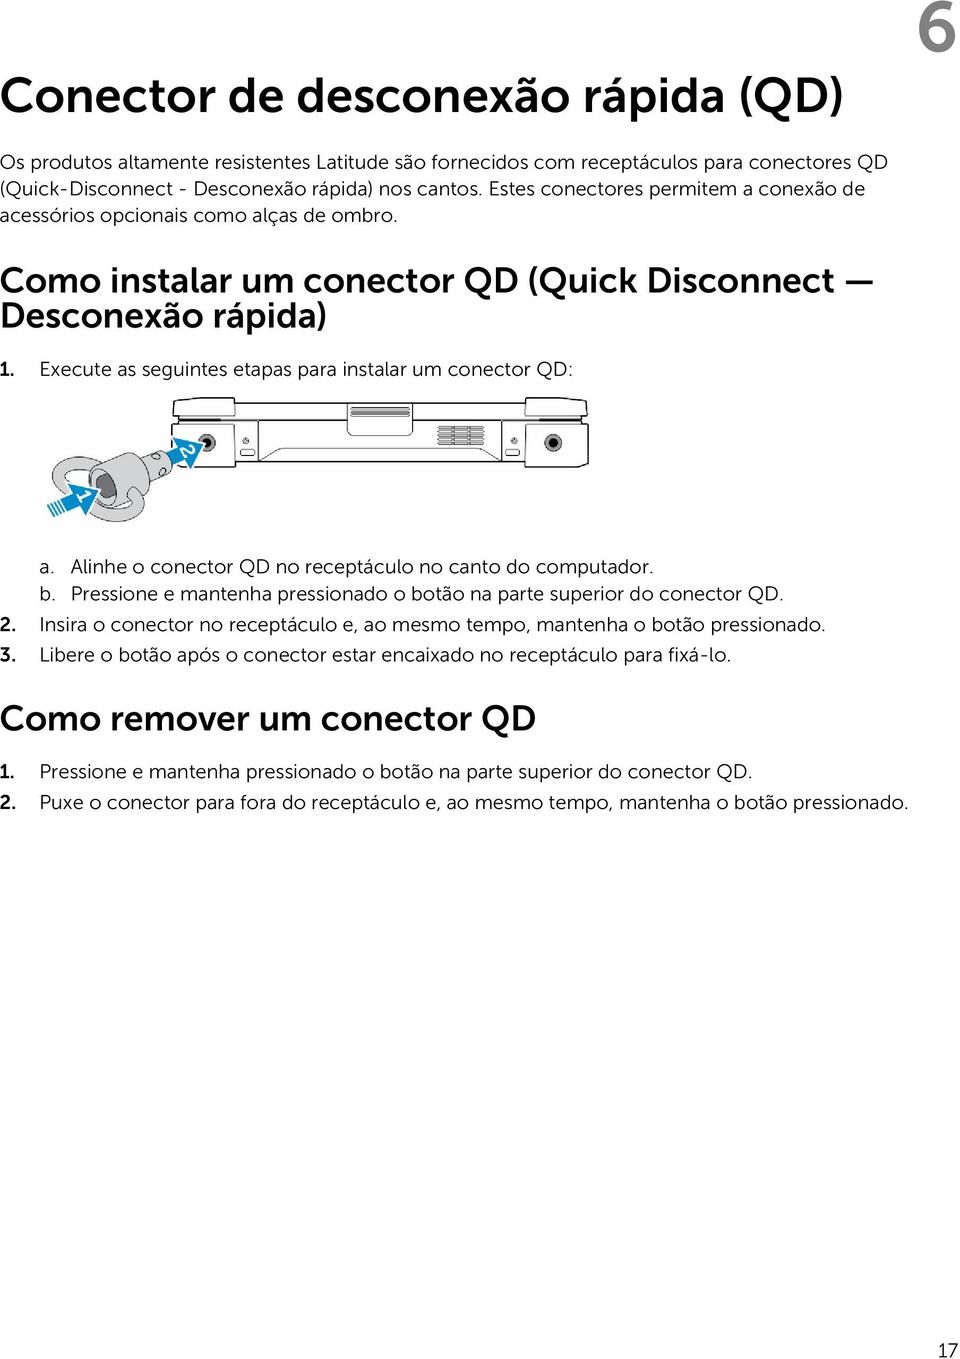 Execute as seguintes etapas para instalar um conector QD: a. Alinhe o conector QD no receptáculo no canto do computador. b. Pressione e mantenha pressionado o botão na parte superior do conector QD.